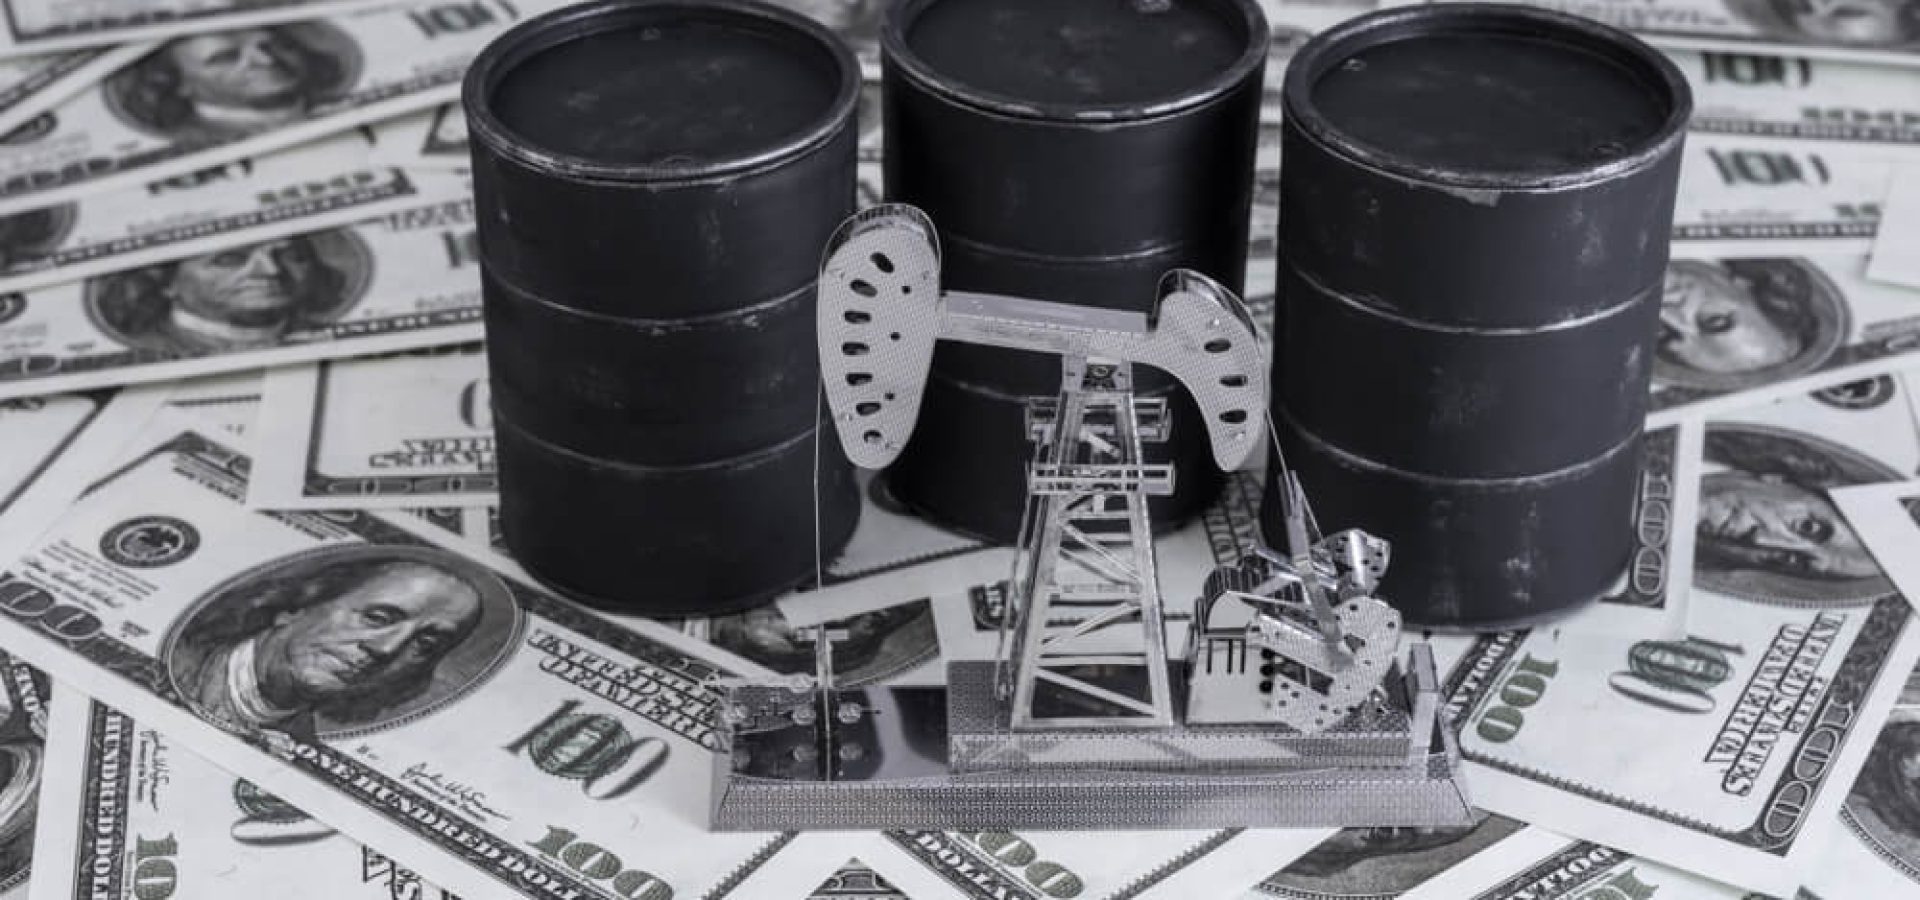 miniature oil barrels on top of dollar bills